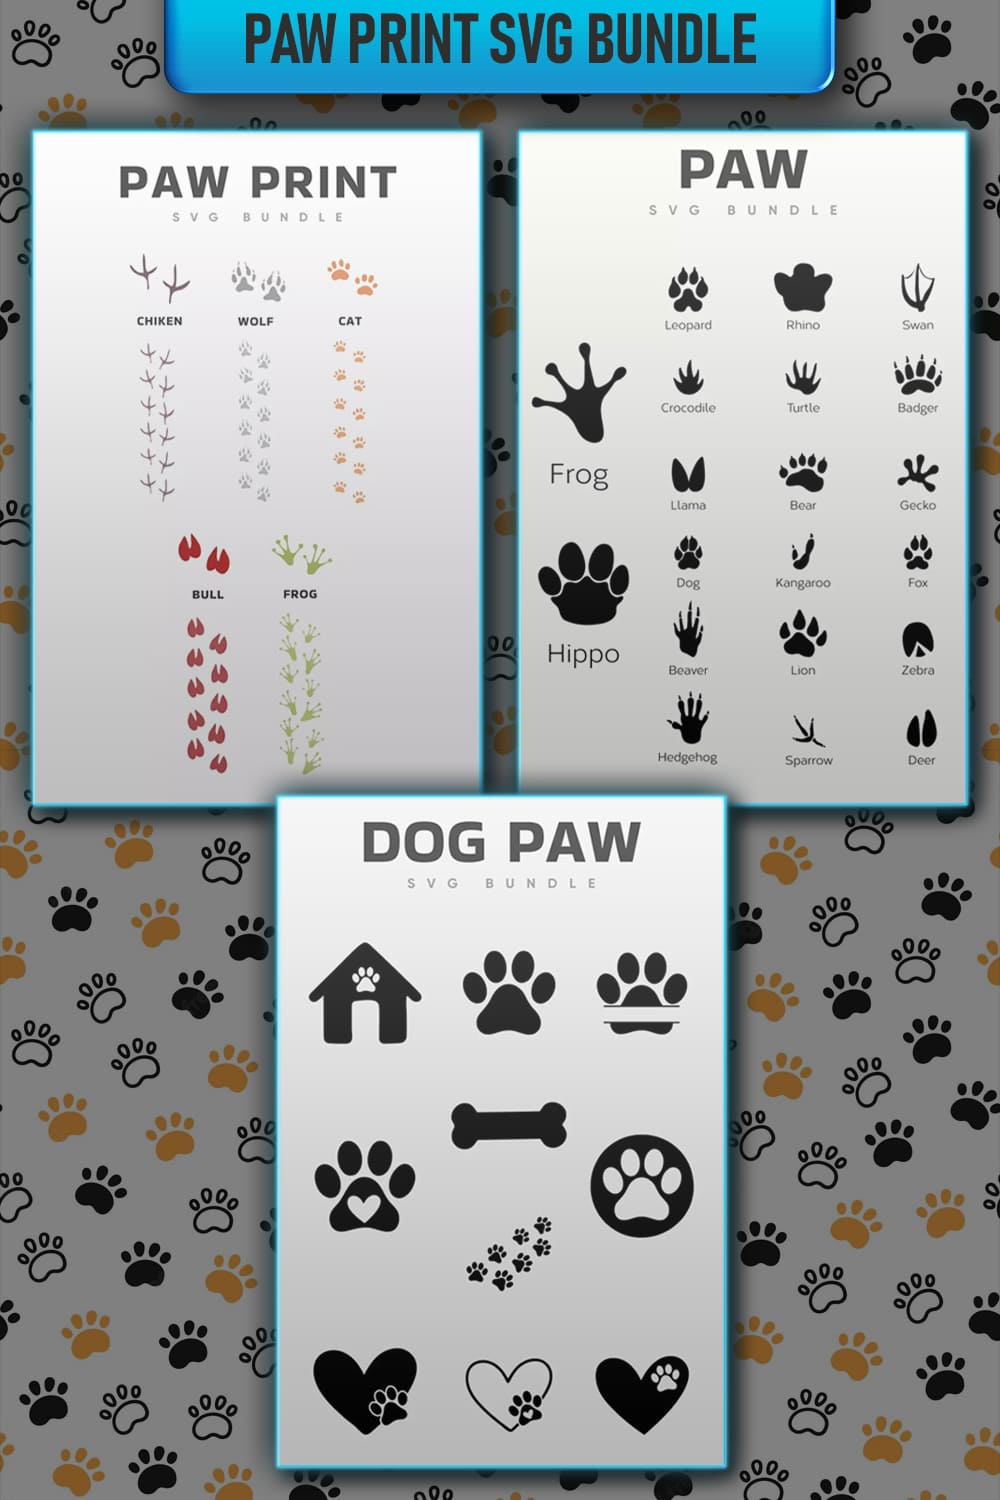 Dog paw print and paw print bundle.